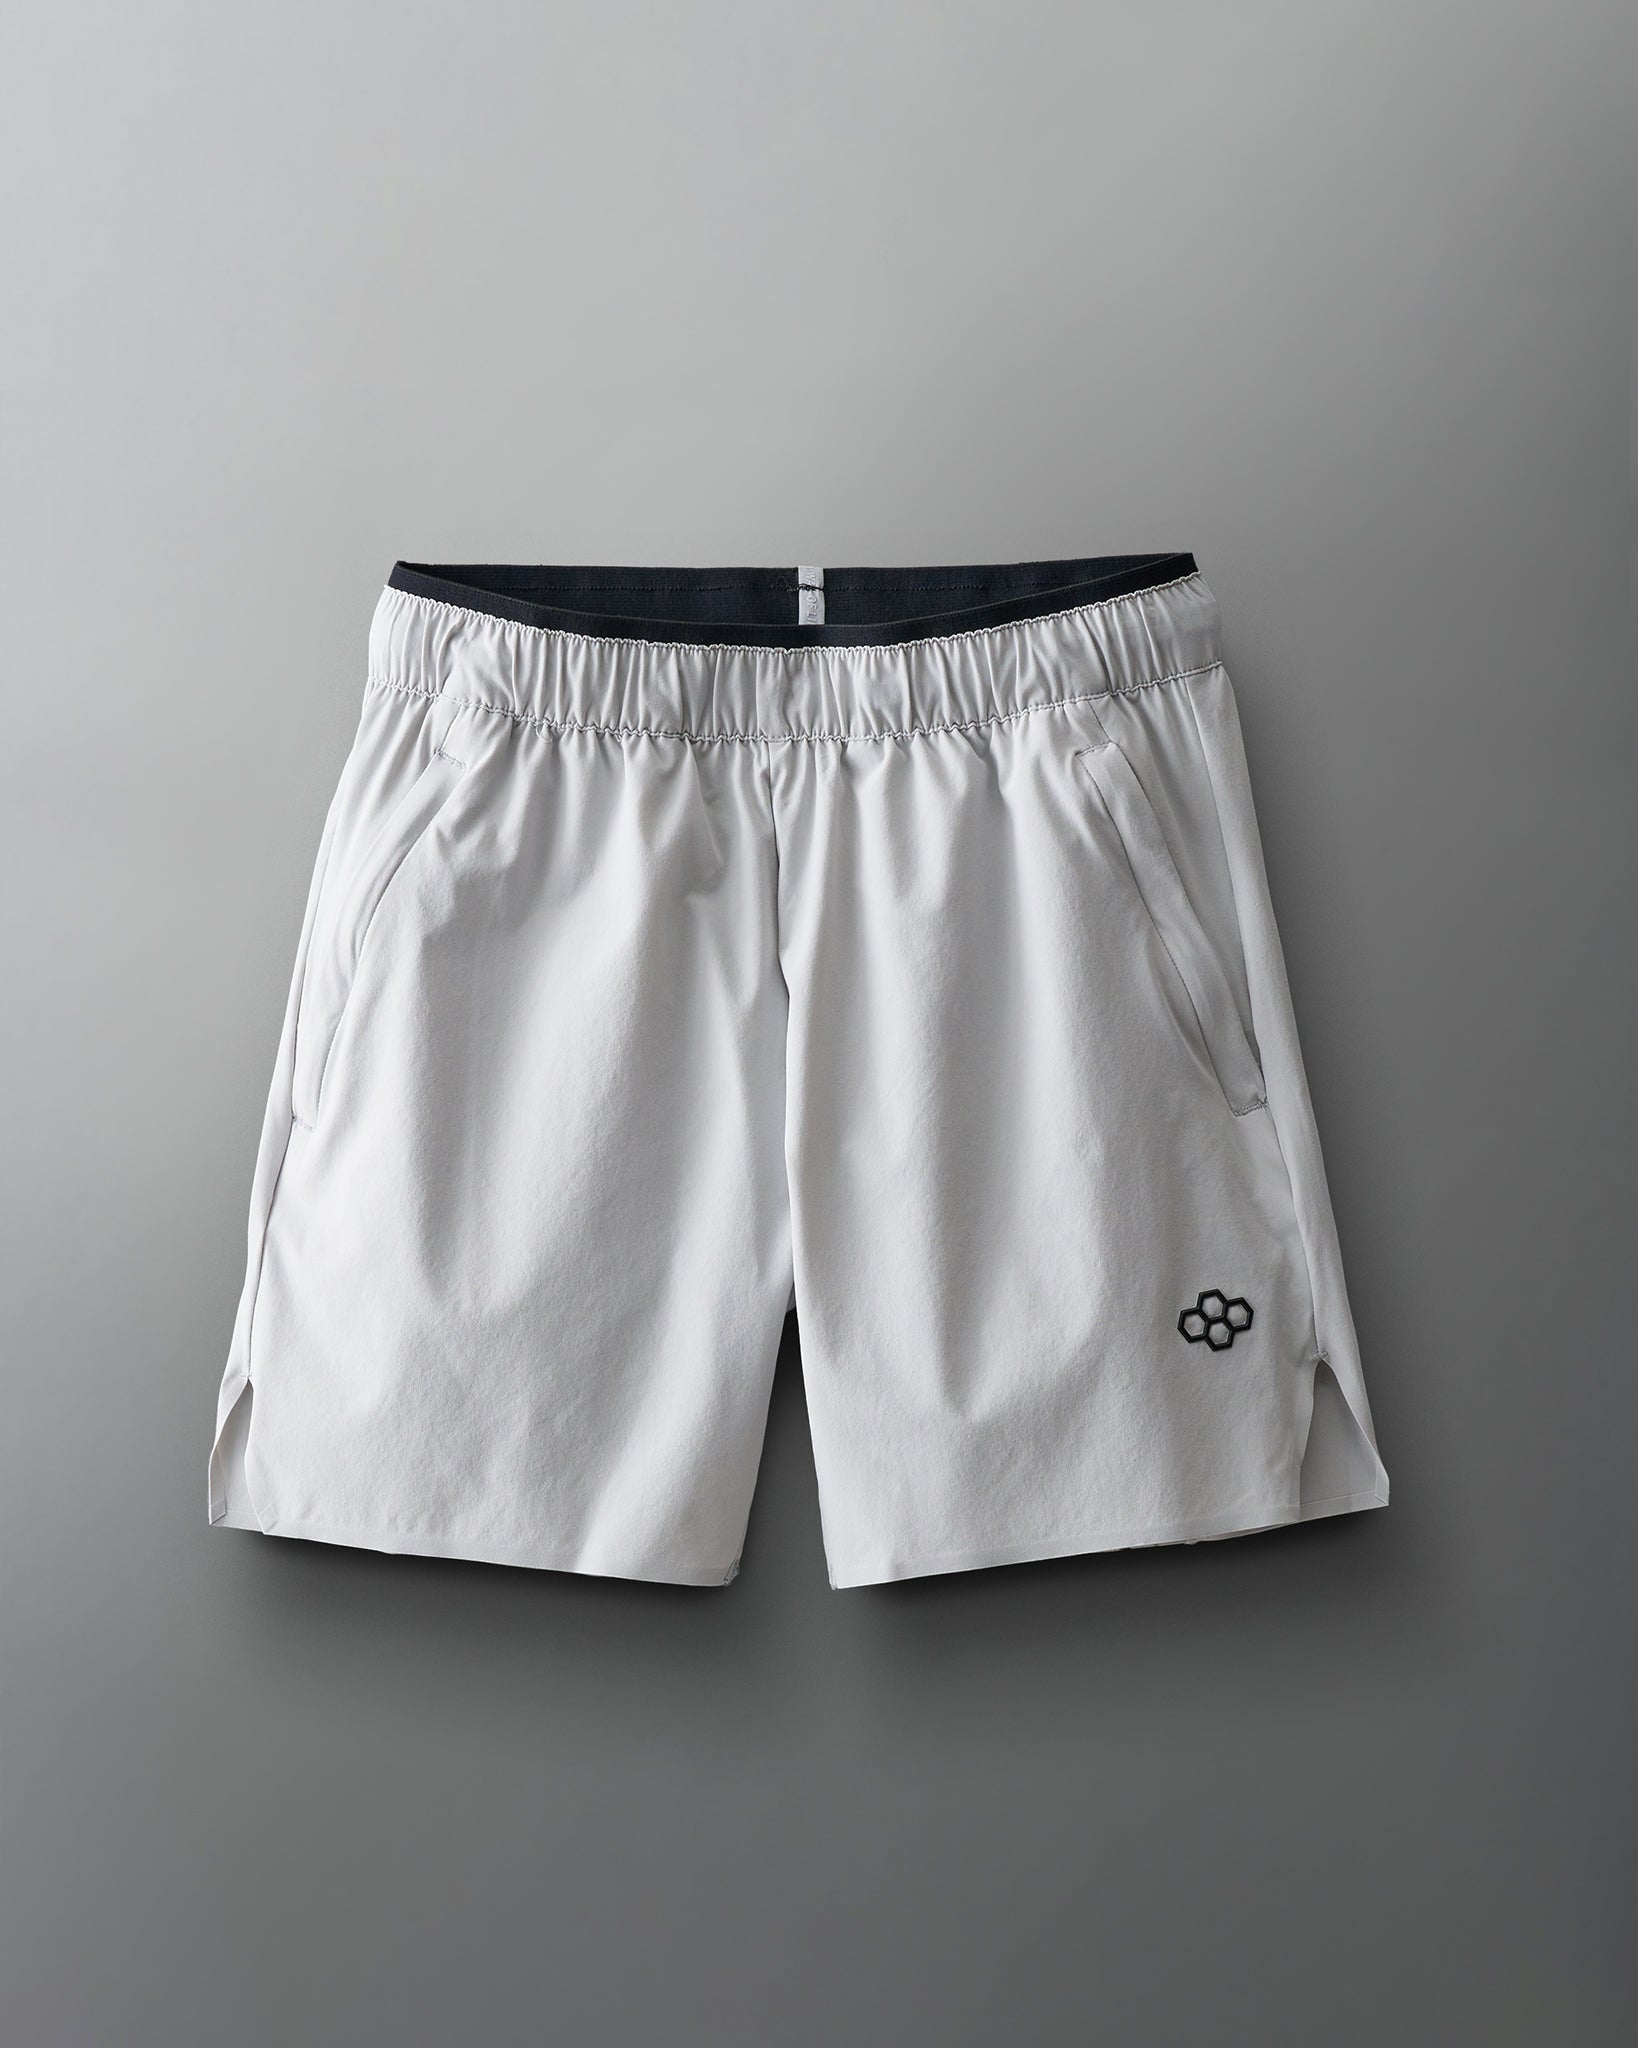 Performance Uniform Shorts-Unisex--IAWC